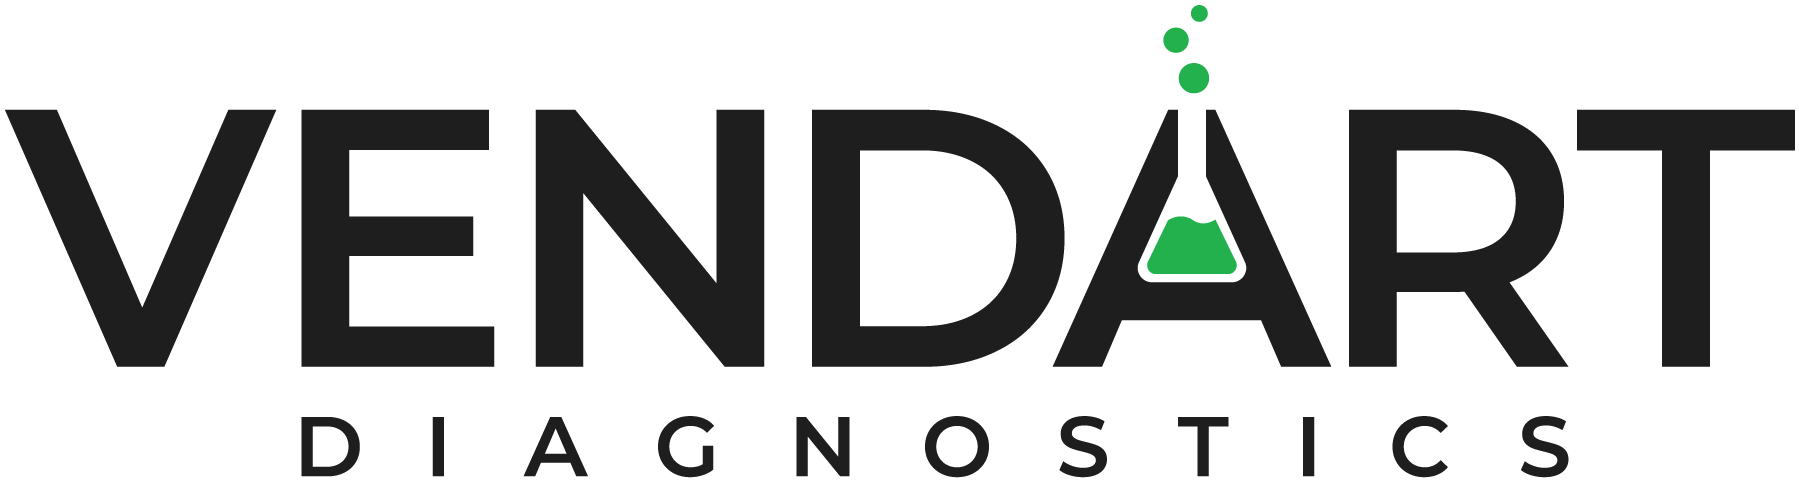 Vendart logo